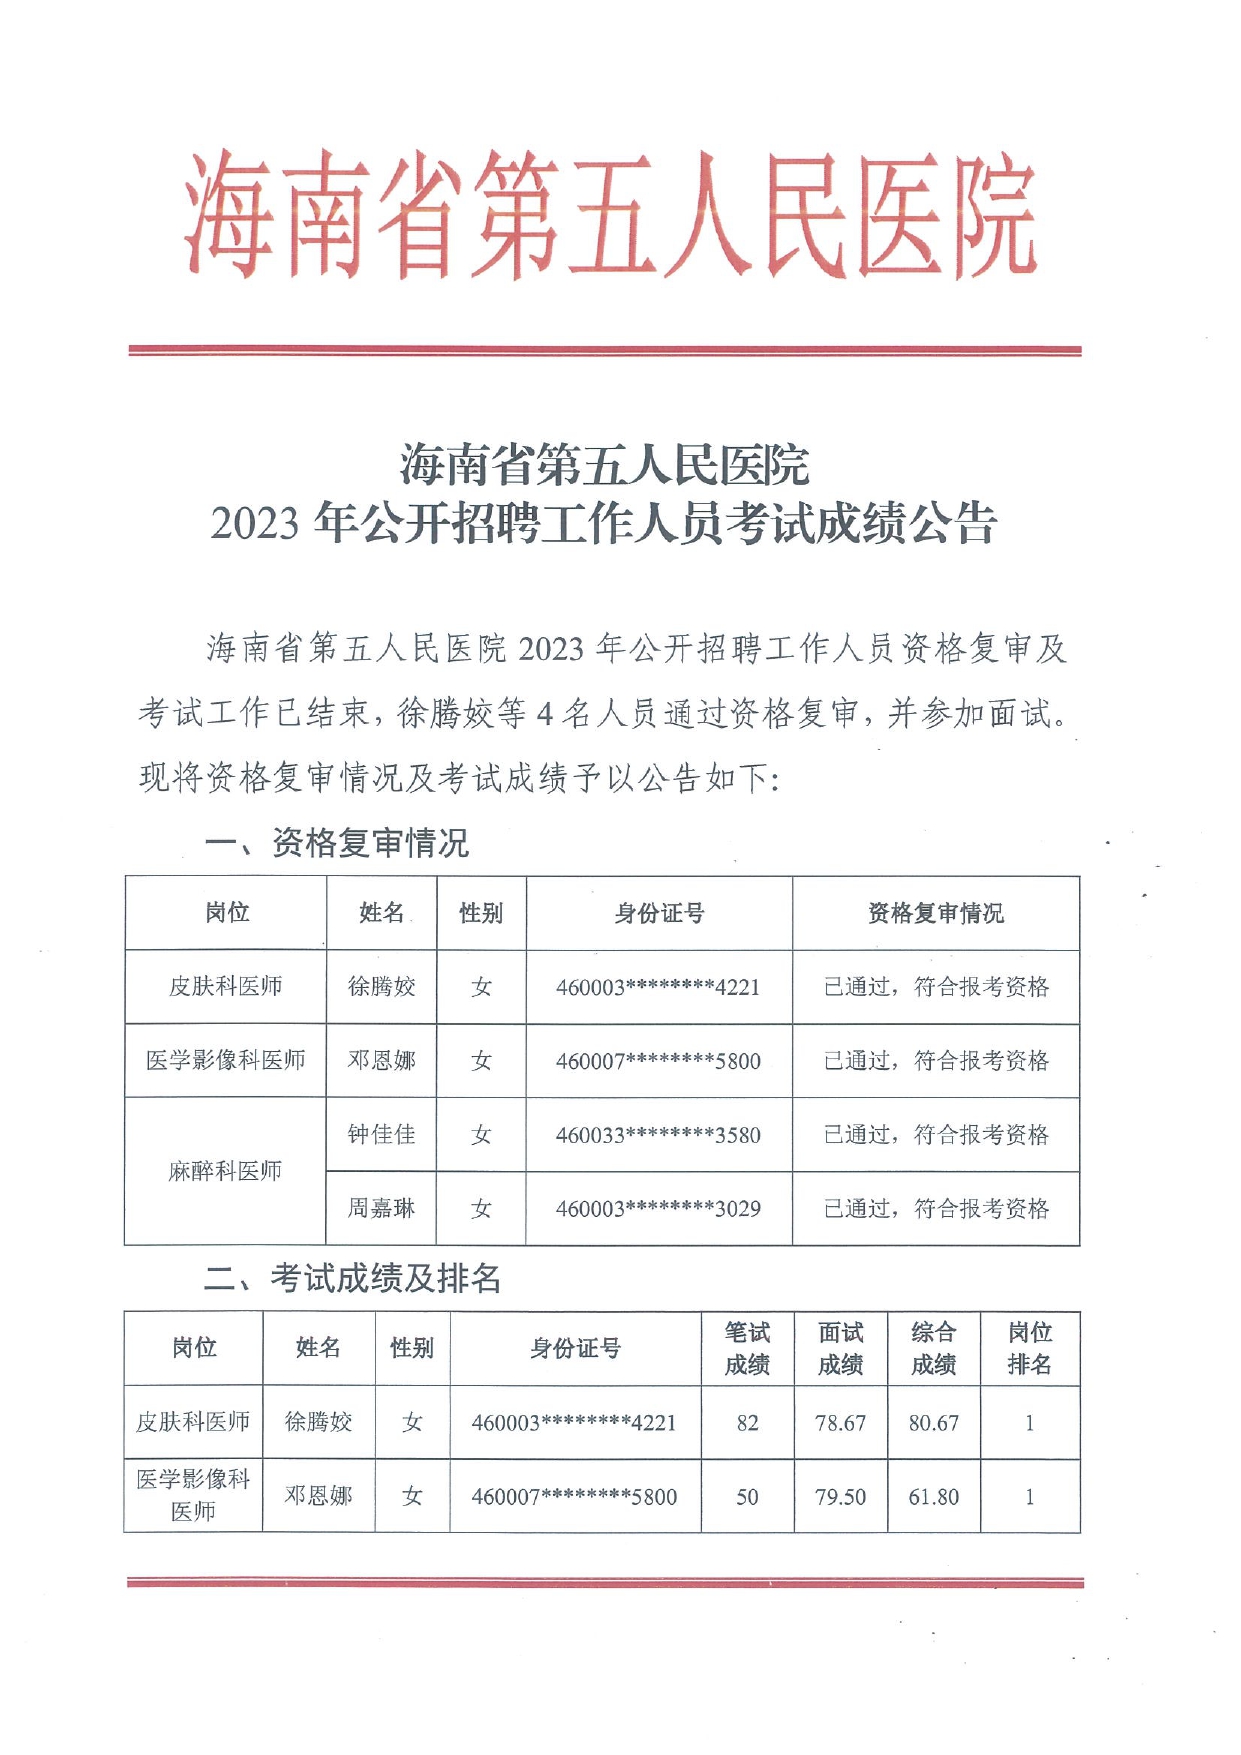 海南省第五人民医院2023年公开招聘工作人员考试成绩公告20230815(1)_page-0001.jpg